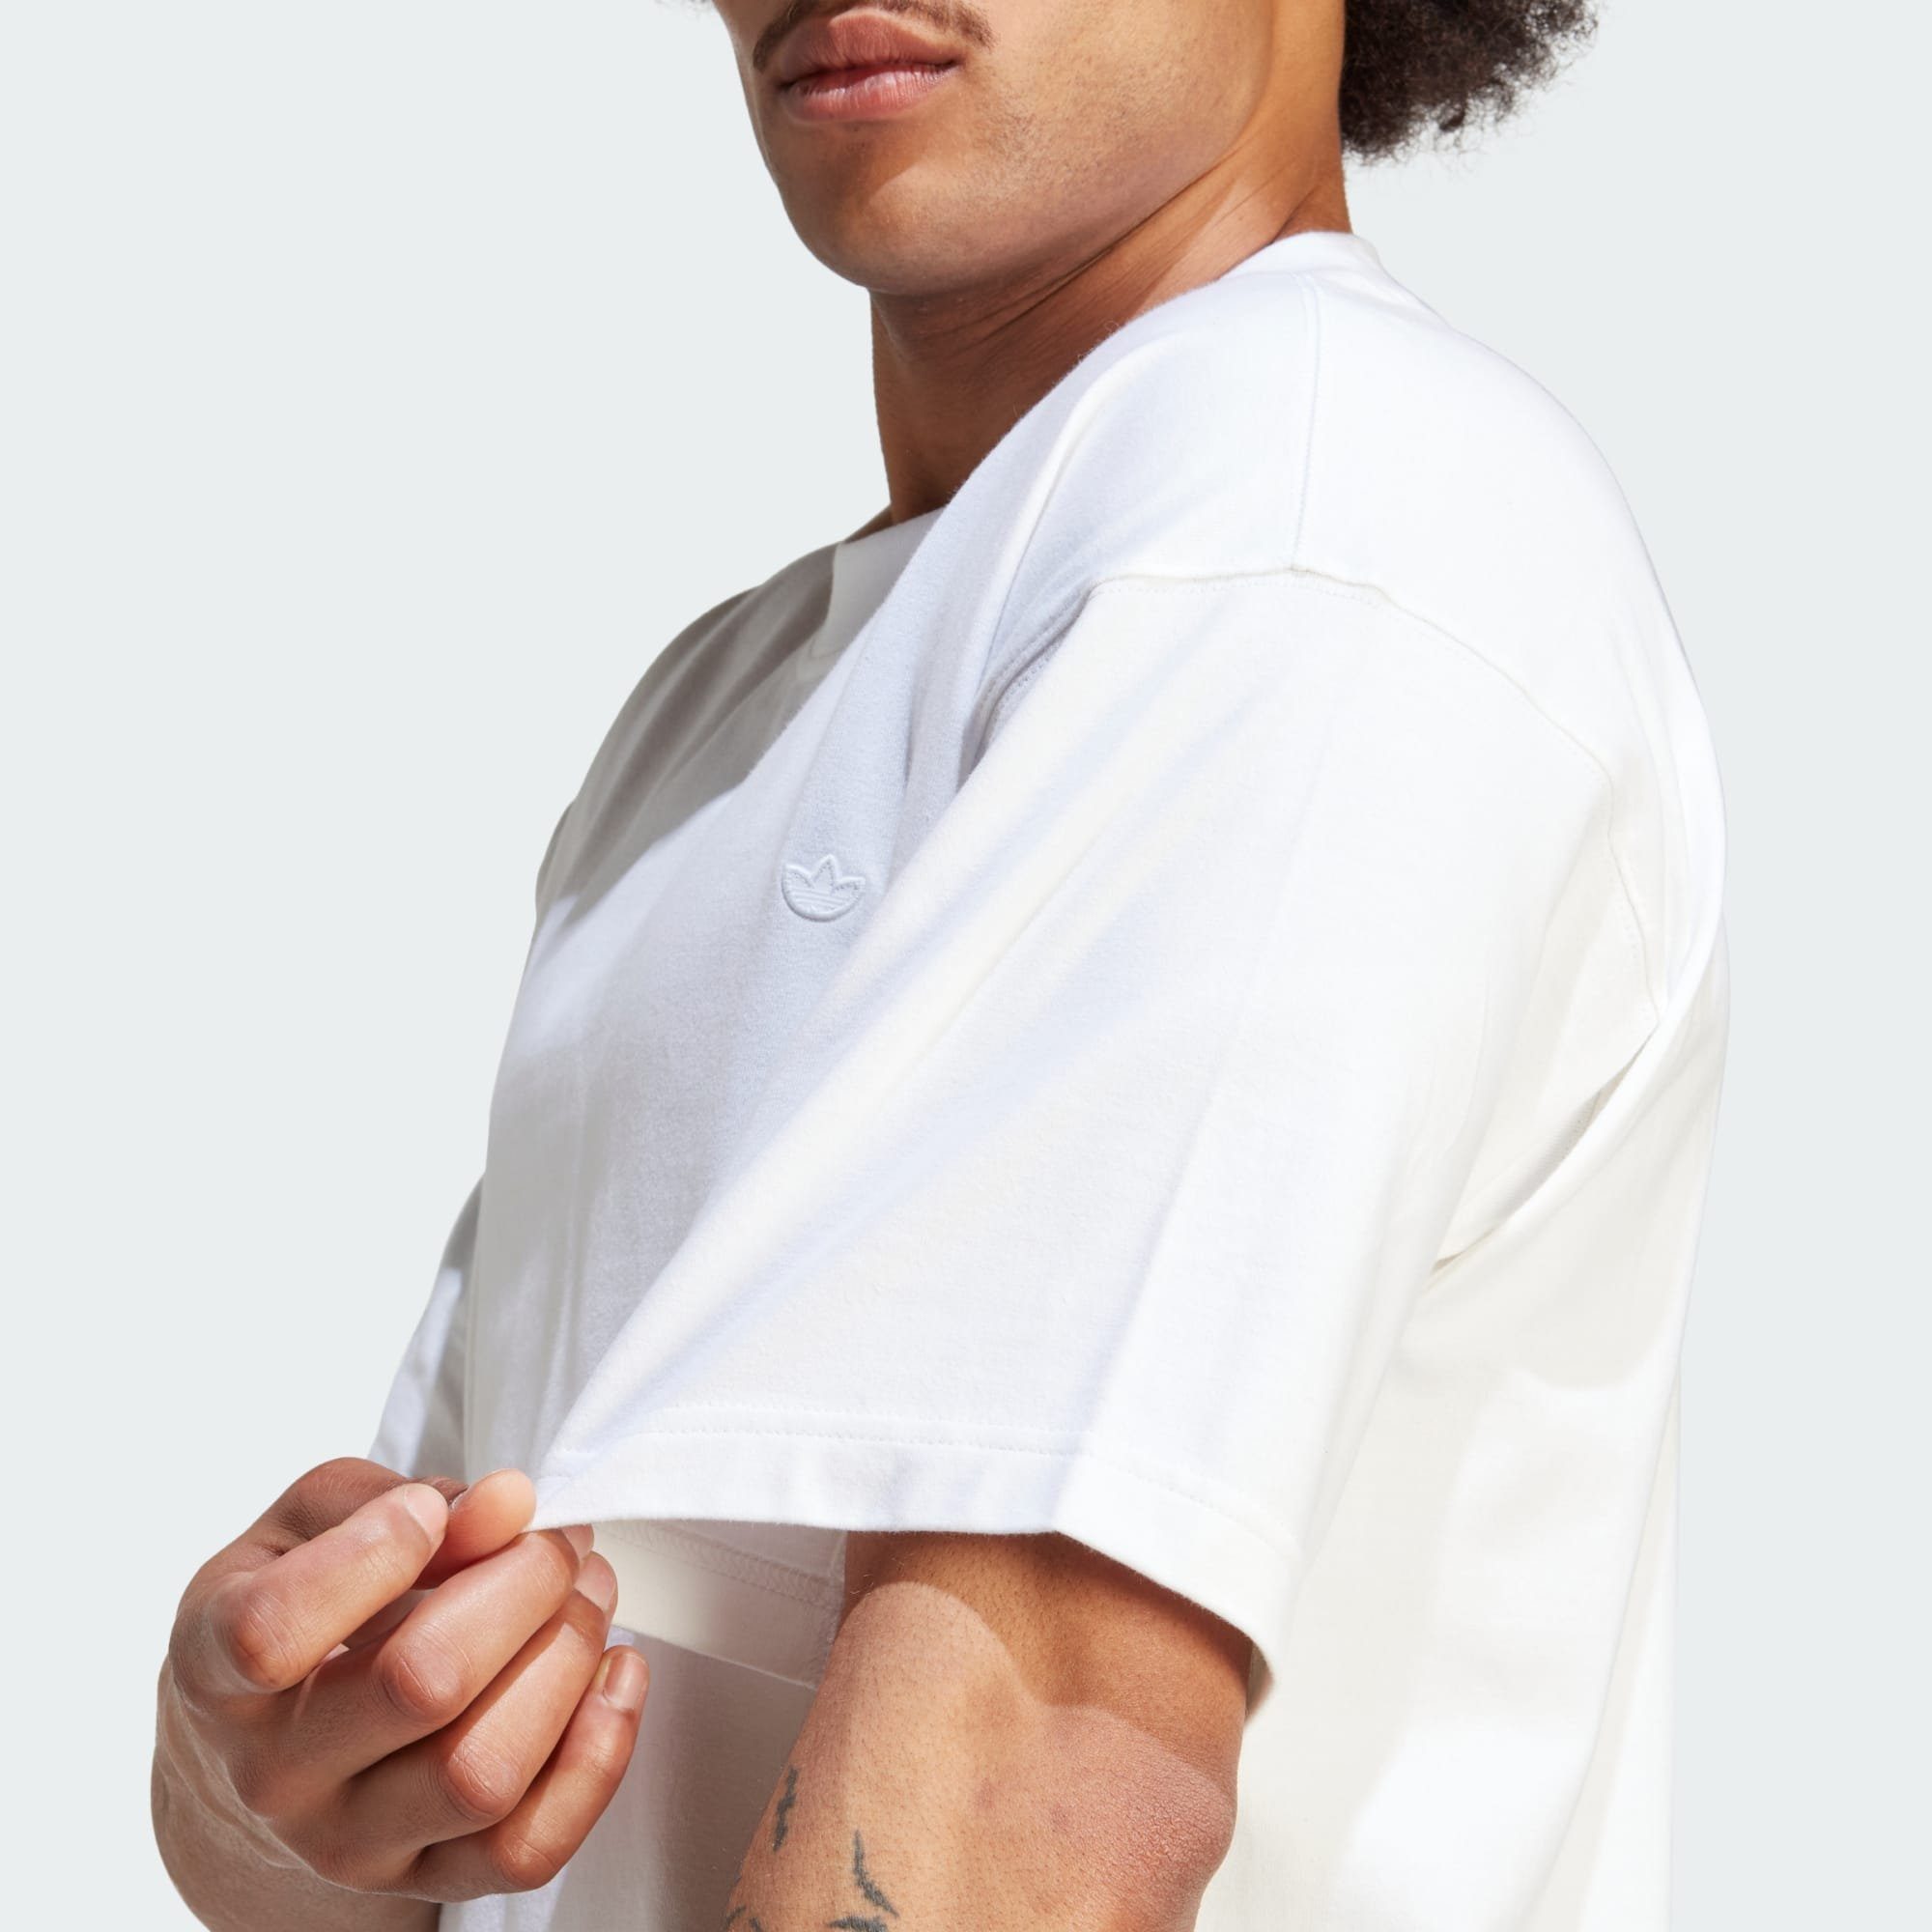 adidas T-SHIRT CONTEMPO Originals White ADICOLOR T-Shirt